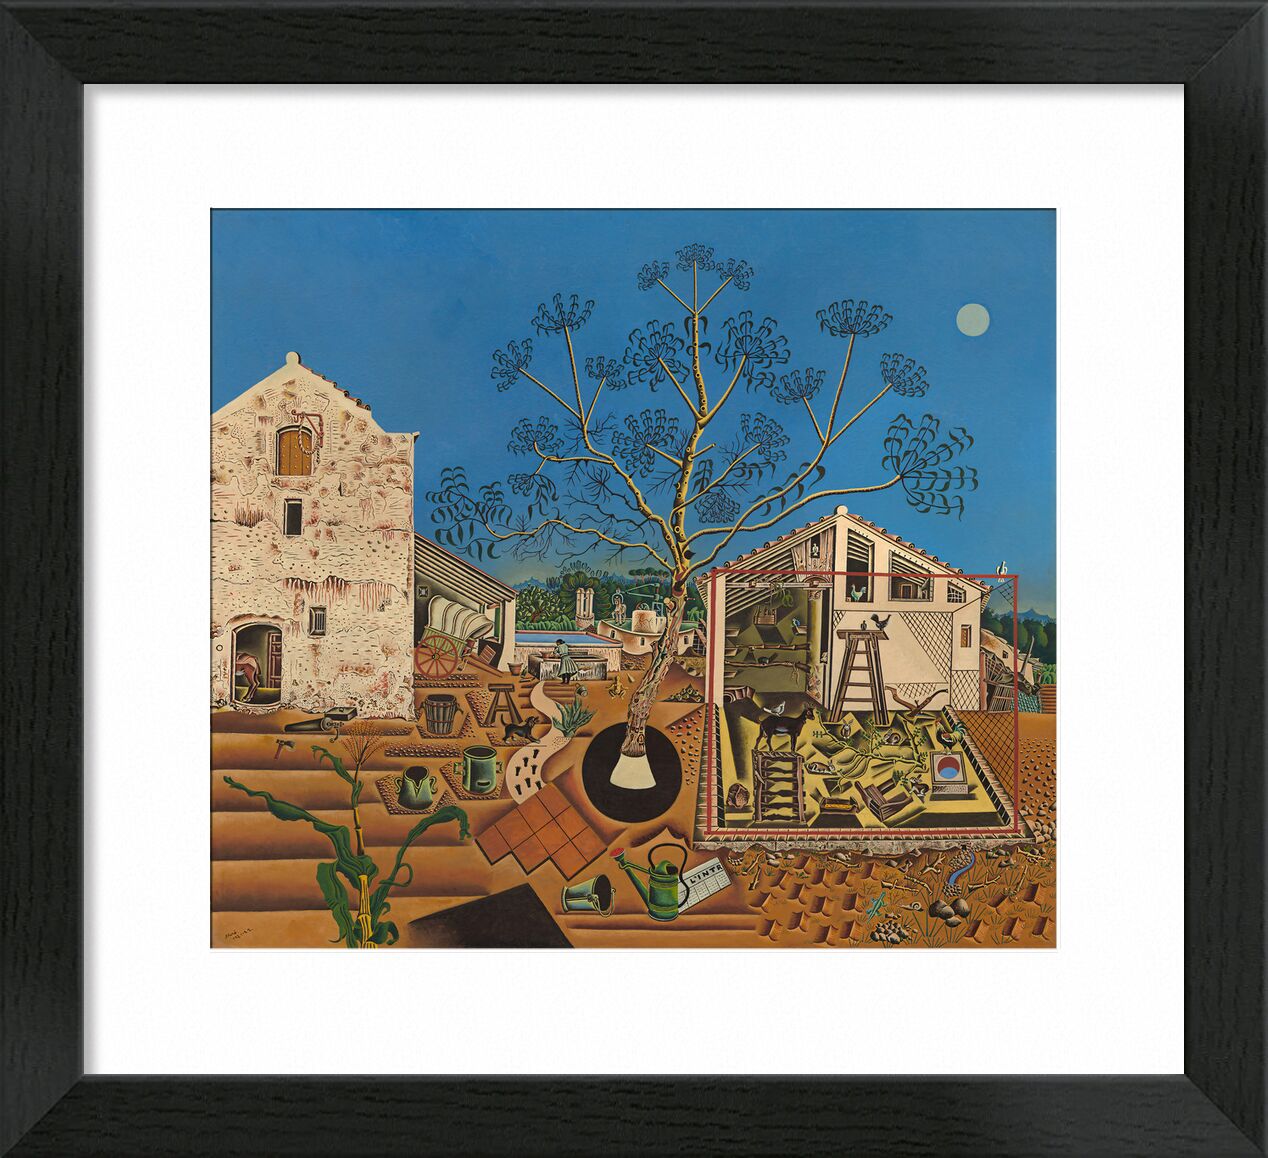 Der Bauernhof - Joan Miró von Bildende Kunst, Prodi Art, Kultur, Bauernhof, Joan Miró, Miro, Bauern, Felder